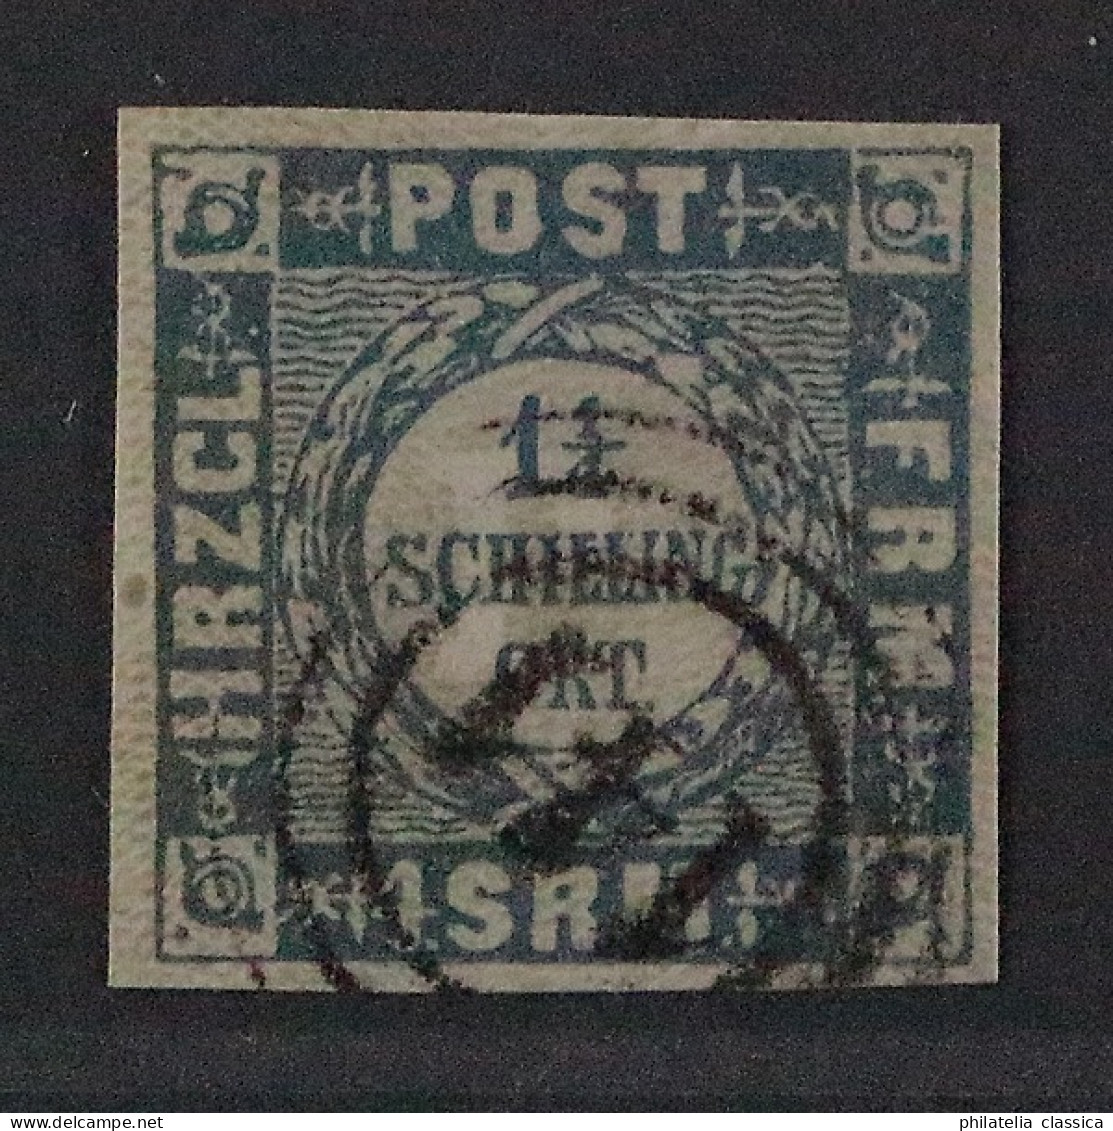 Schleswig 6, Dicke Schrift, Mit Seltenem Stempel 141 CREMPE, LUXUS, KW 325,-€ - Schleswig-Holstein